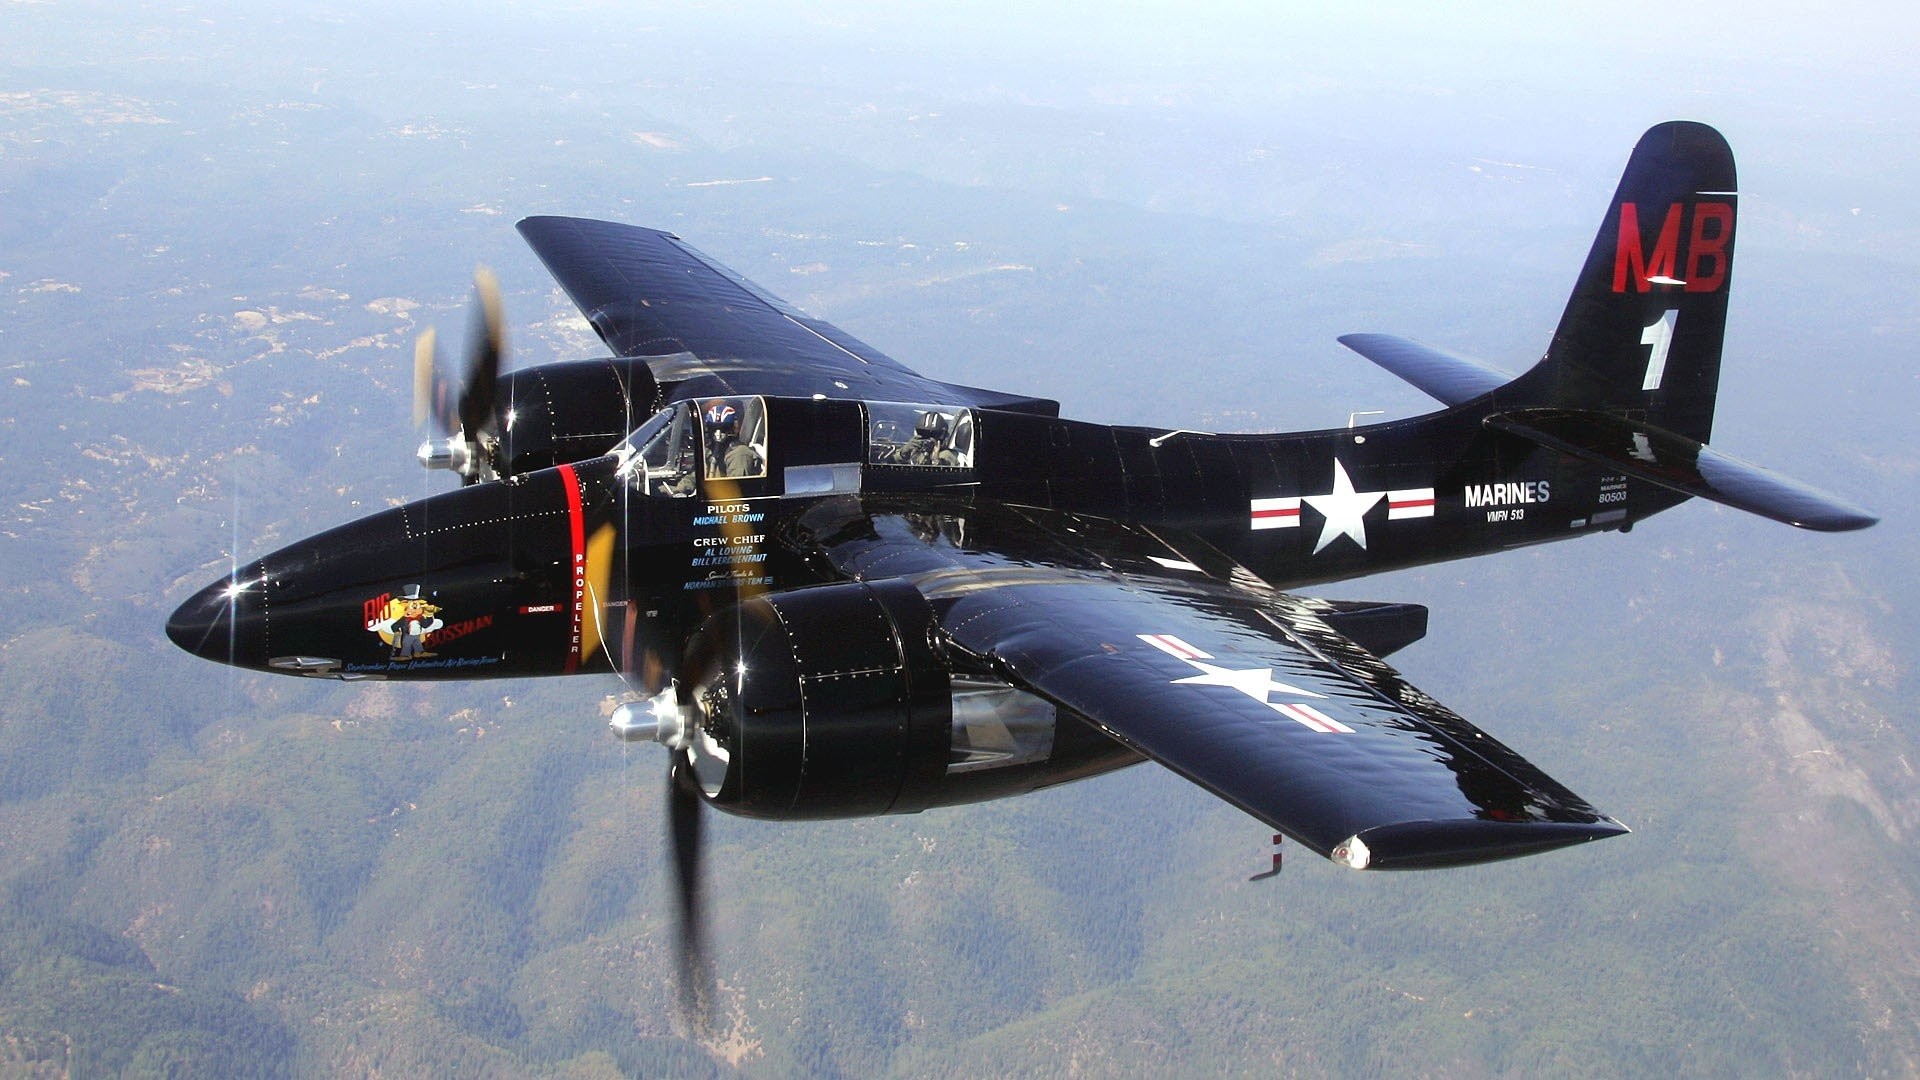 1920x1080 Aircraft military World War II Warbird fighters Tigercat wallpaper |   | 264098 | WallpaperUP